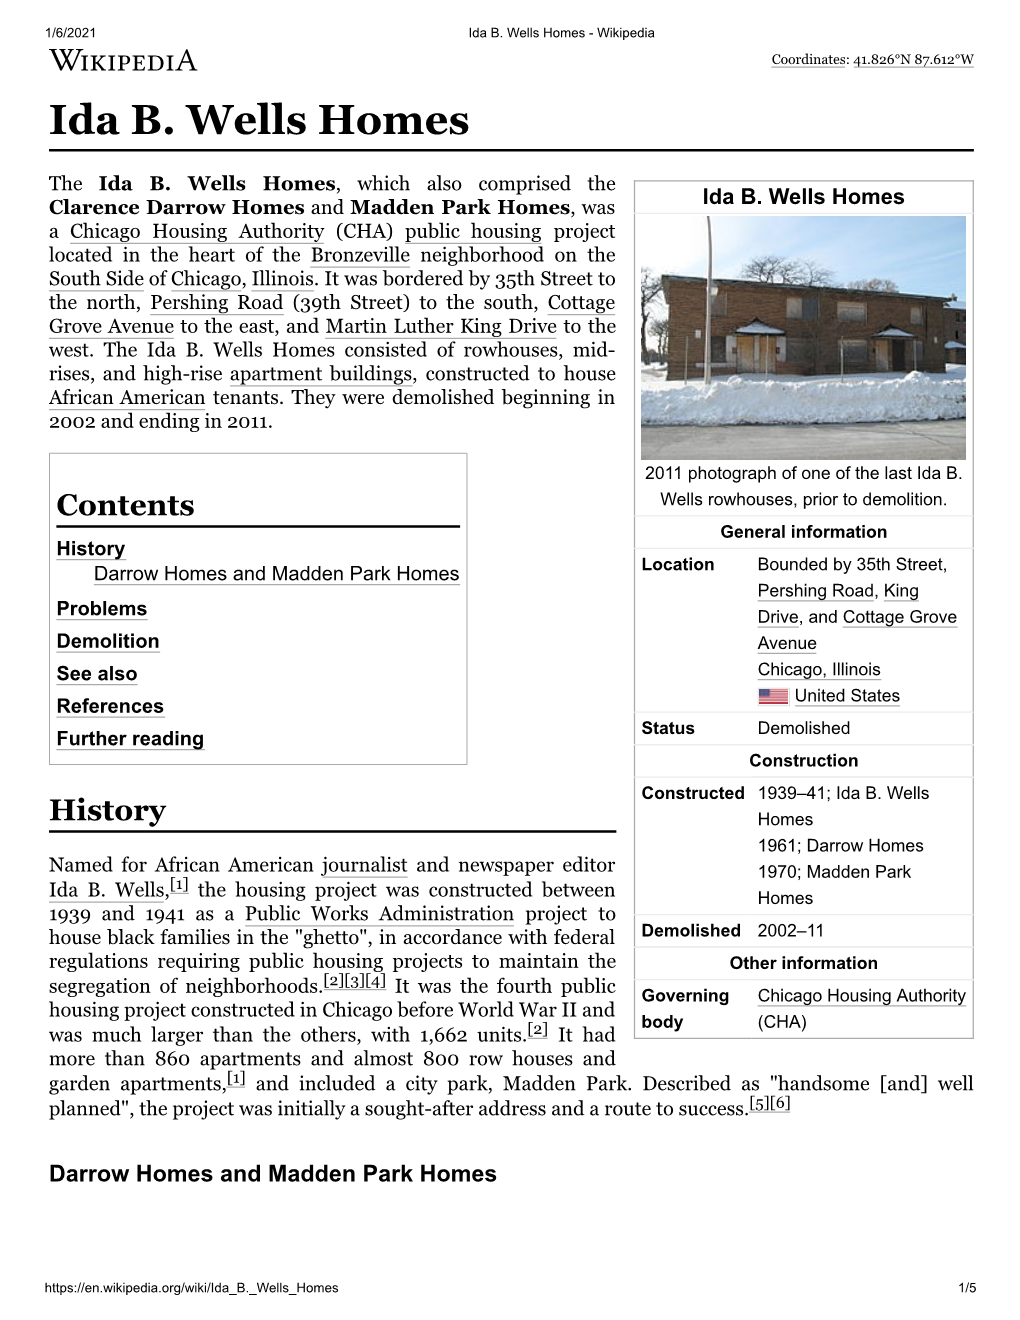 Ida B. Wells Homes - Wikipedia Coordinates: 41.826°N 87.612°W Ida B